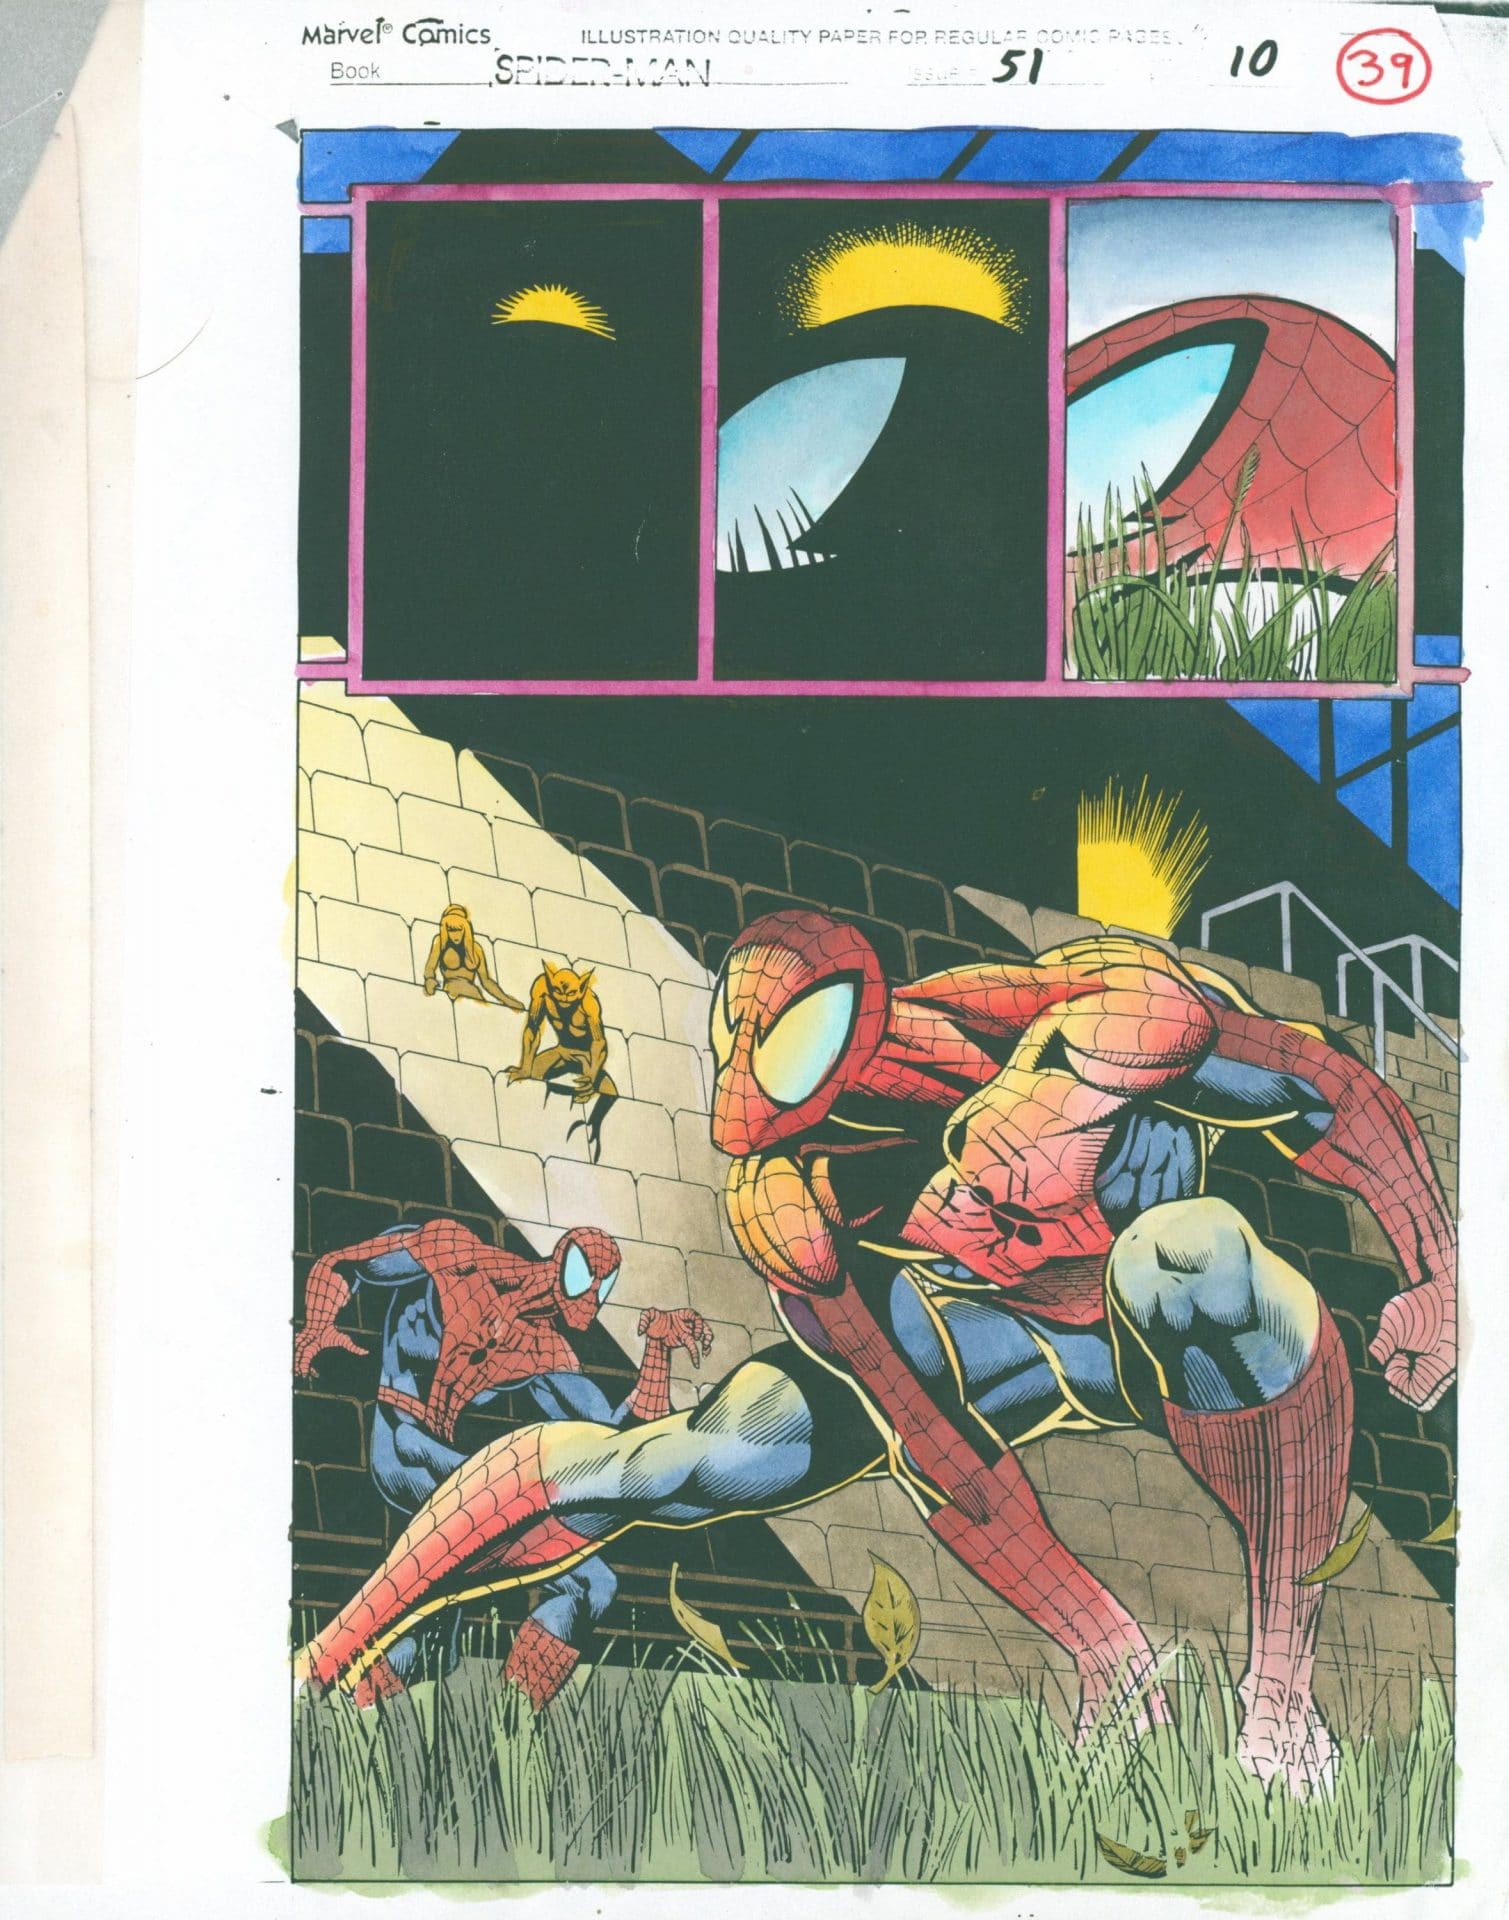 Spider-Man #51, strona 39 (kolor)